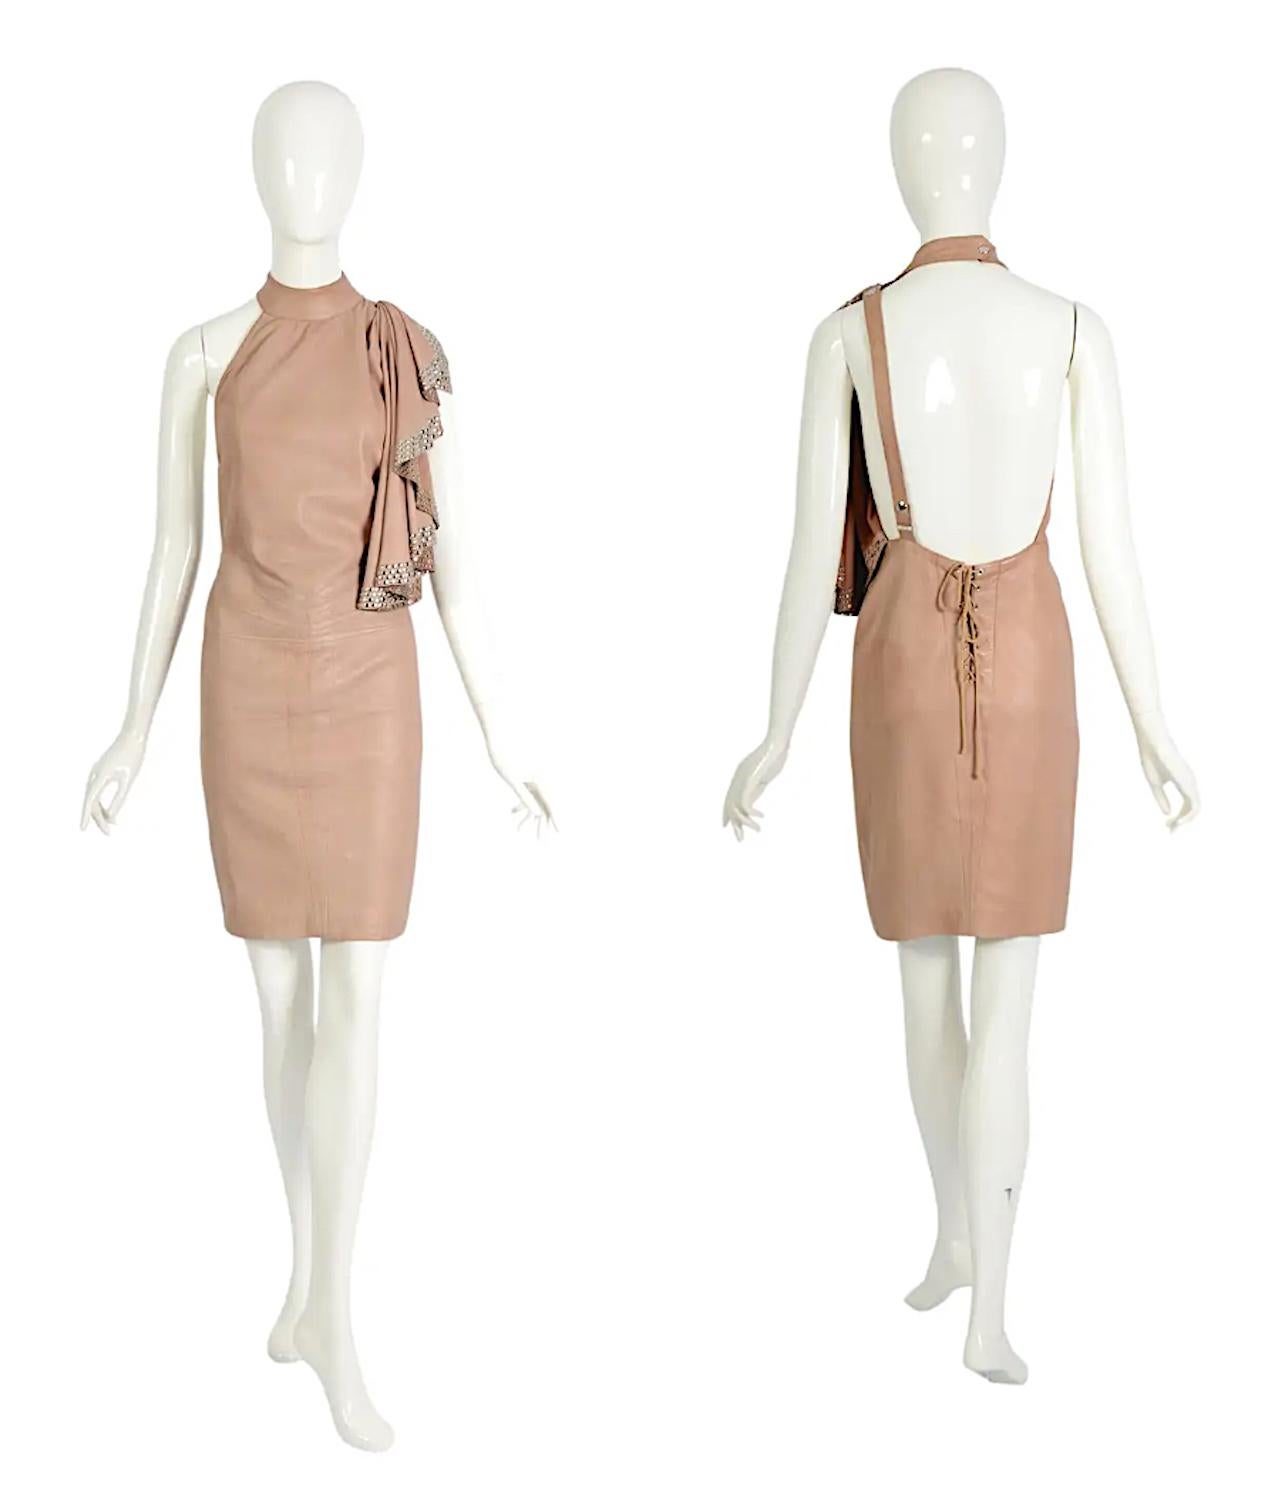 Wir präsentieren ein exquisites Stück Modegeschichte: das kultige nackte Kleid aus weichem Leder von Azzedine Alaïa aus der Frühjahr-Sommer-Kollektion 1981.
Dieses mit viel Liebe zum Detail gefertigte Kleidungsstück in Museumsqualität ist ein Beweis